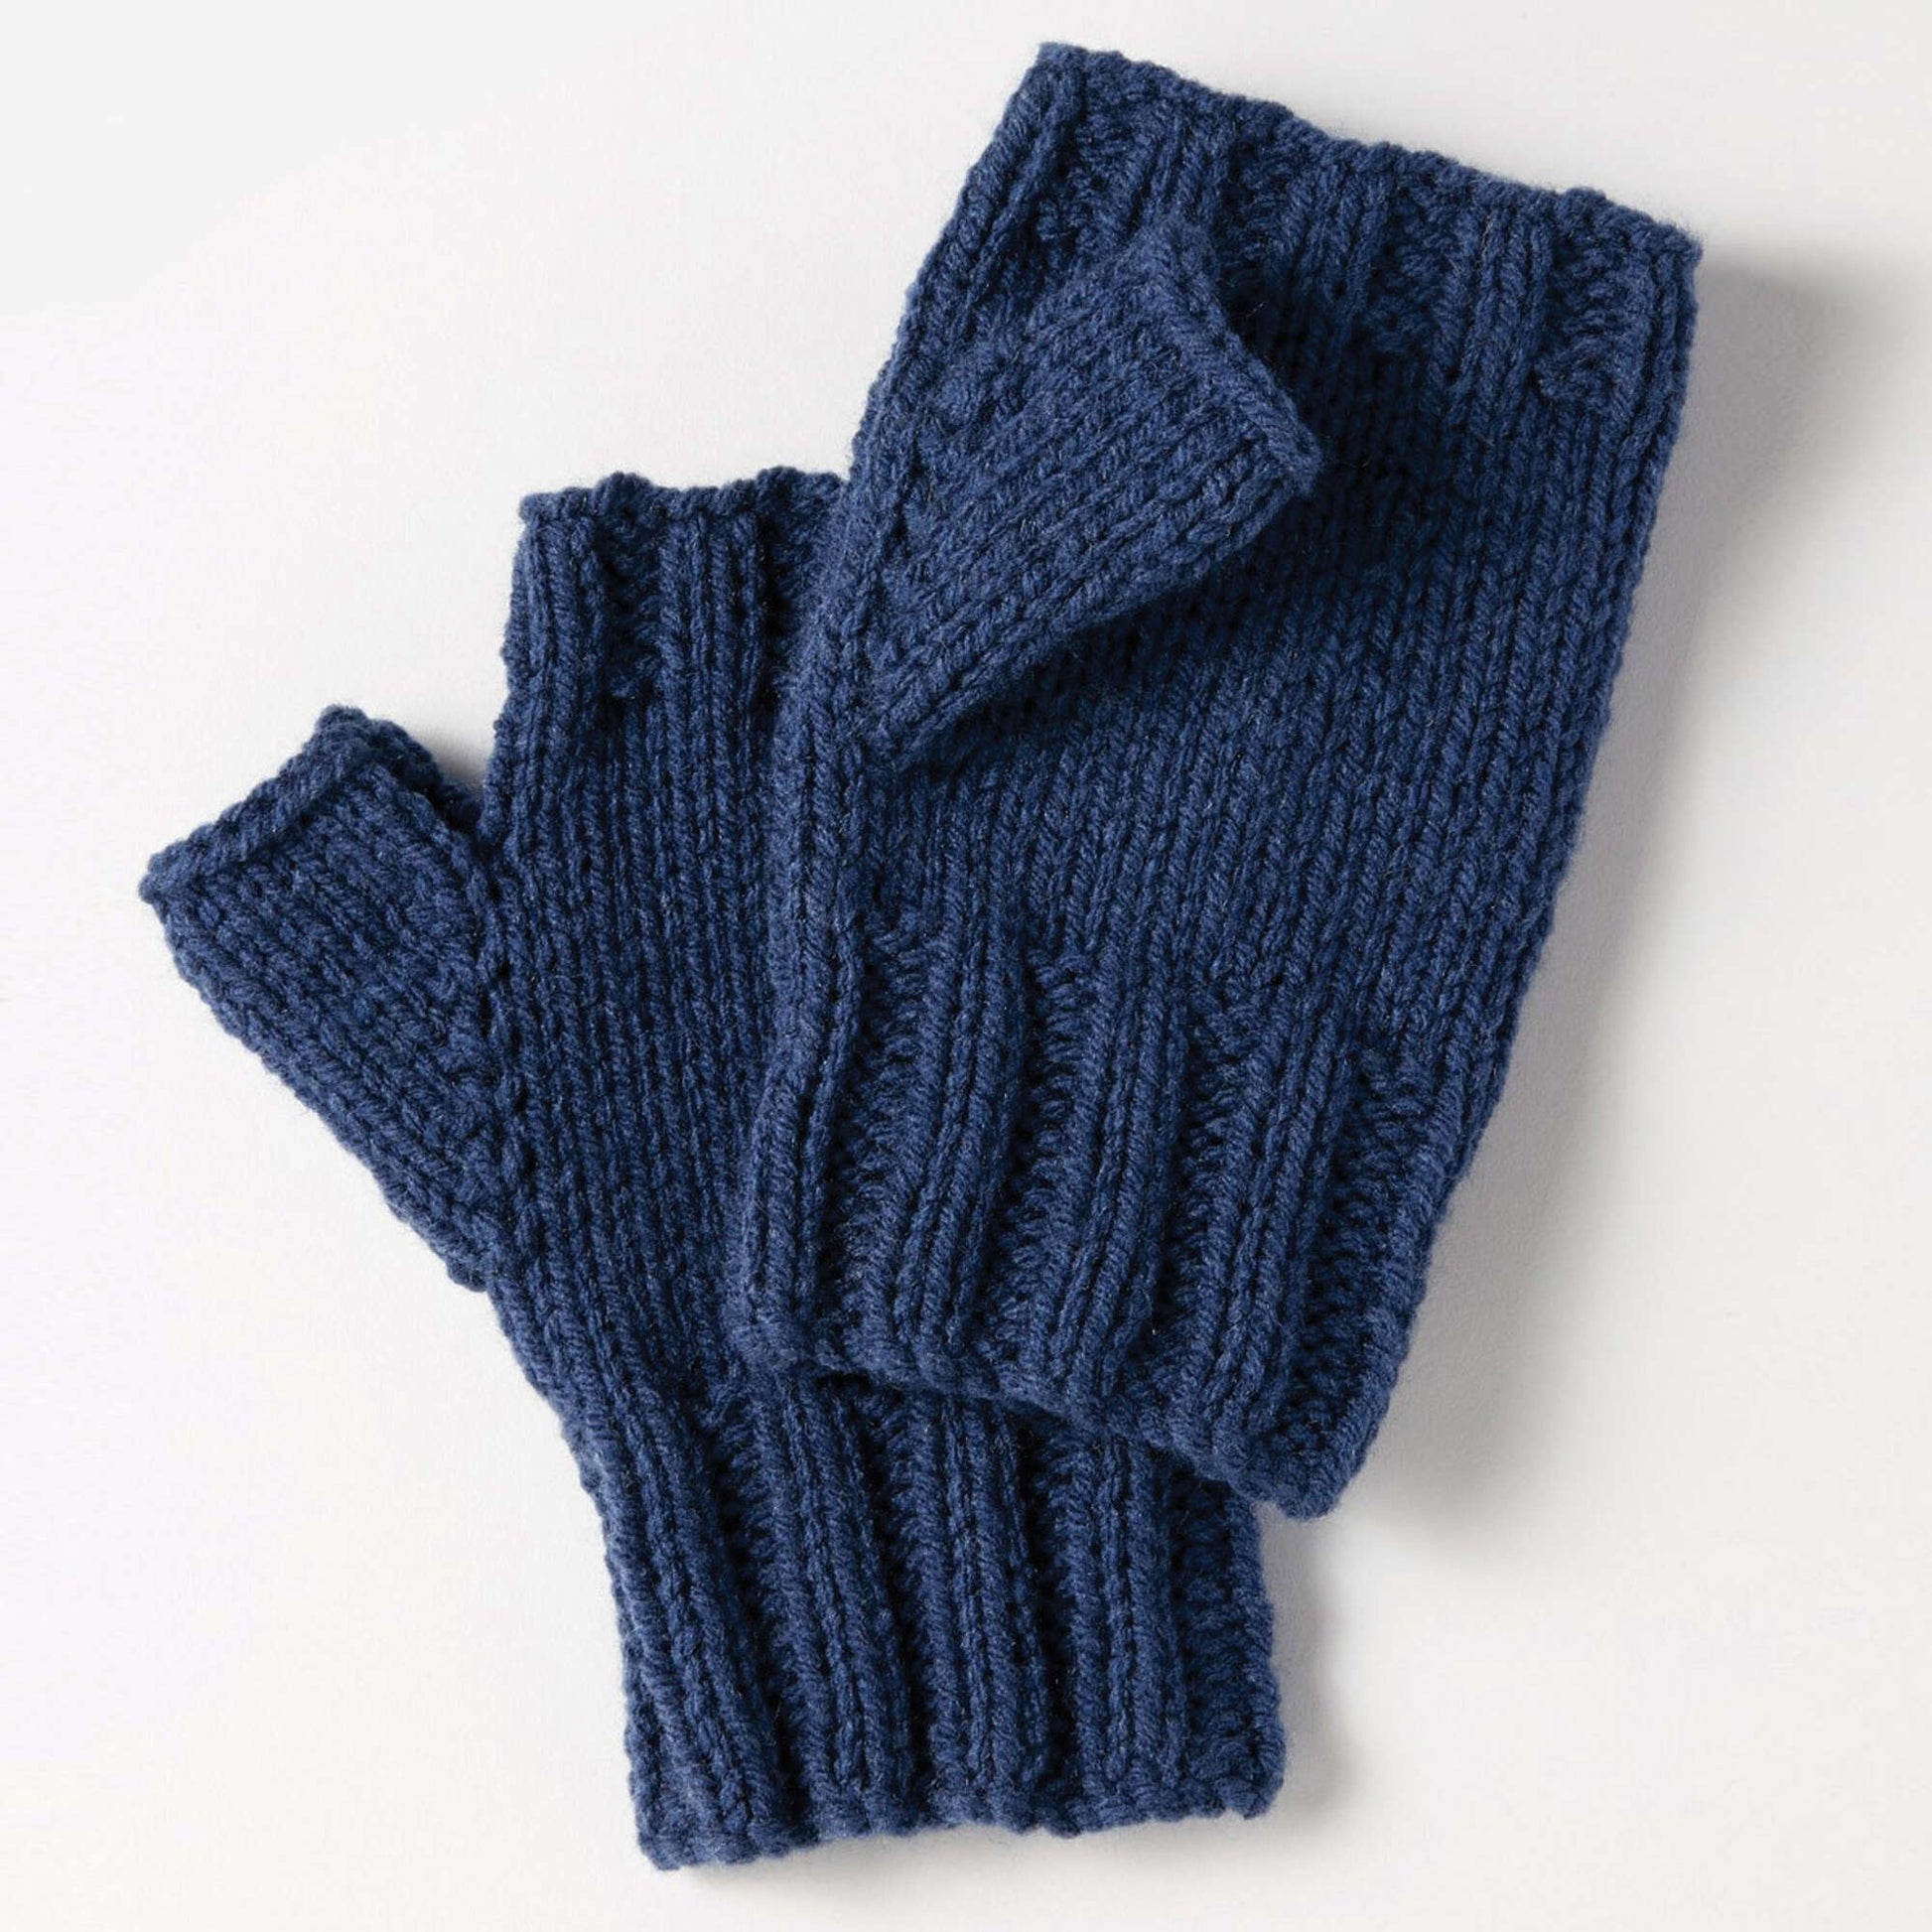 Fingerless Gloves Knitting Pattern : Love